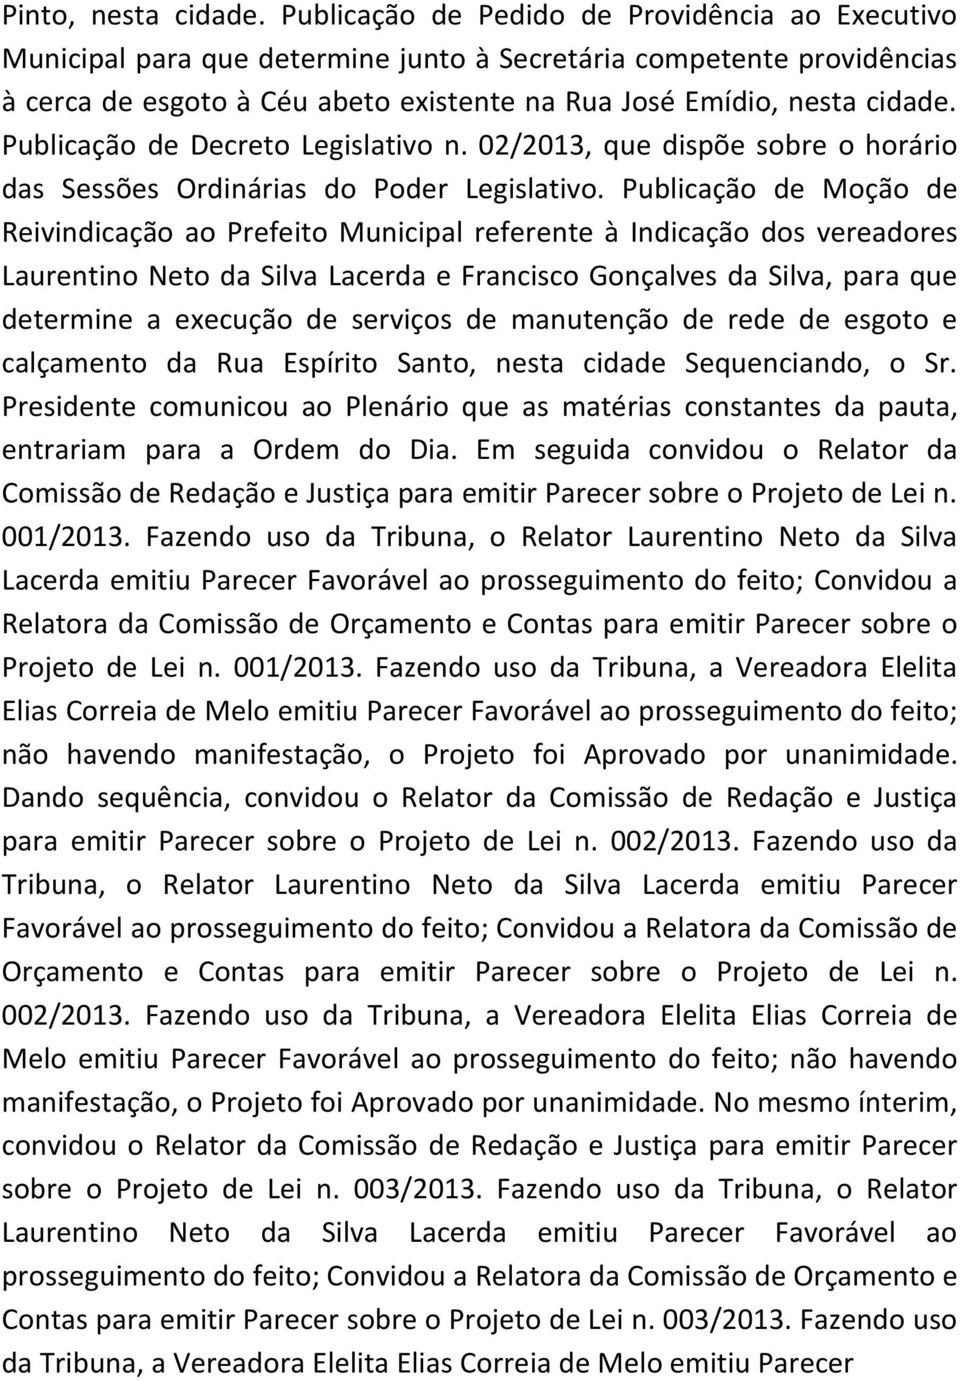 Publicação de Decreto Legislativo n. 02/2013, que dispõe sobre o horário das Sessões Ordinárias do Poder Legislativo.